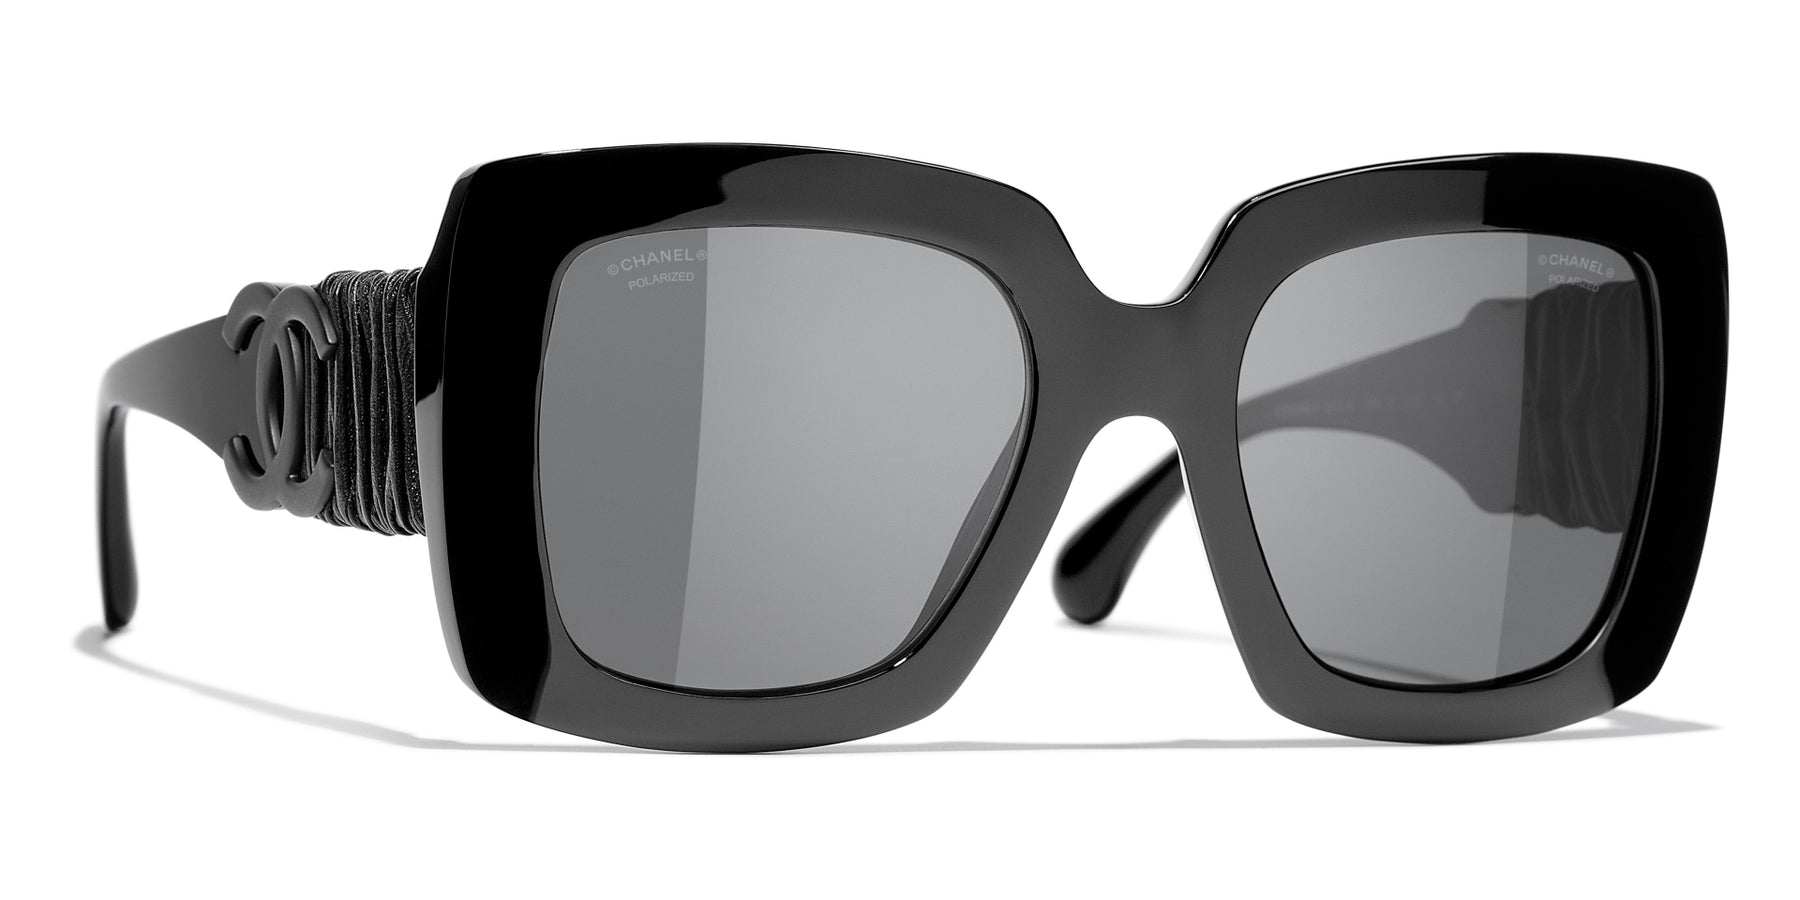 Chanel 5474Q Sunglasses Black/Grey Square Women